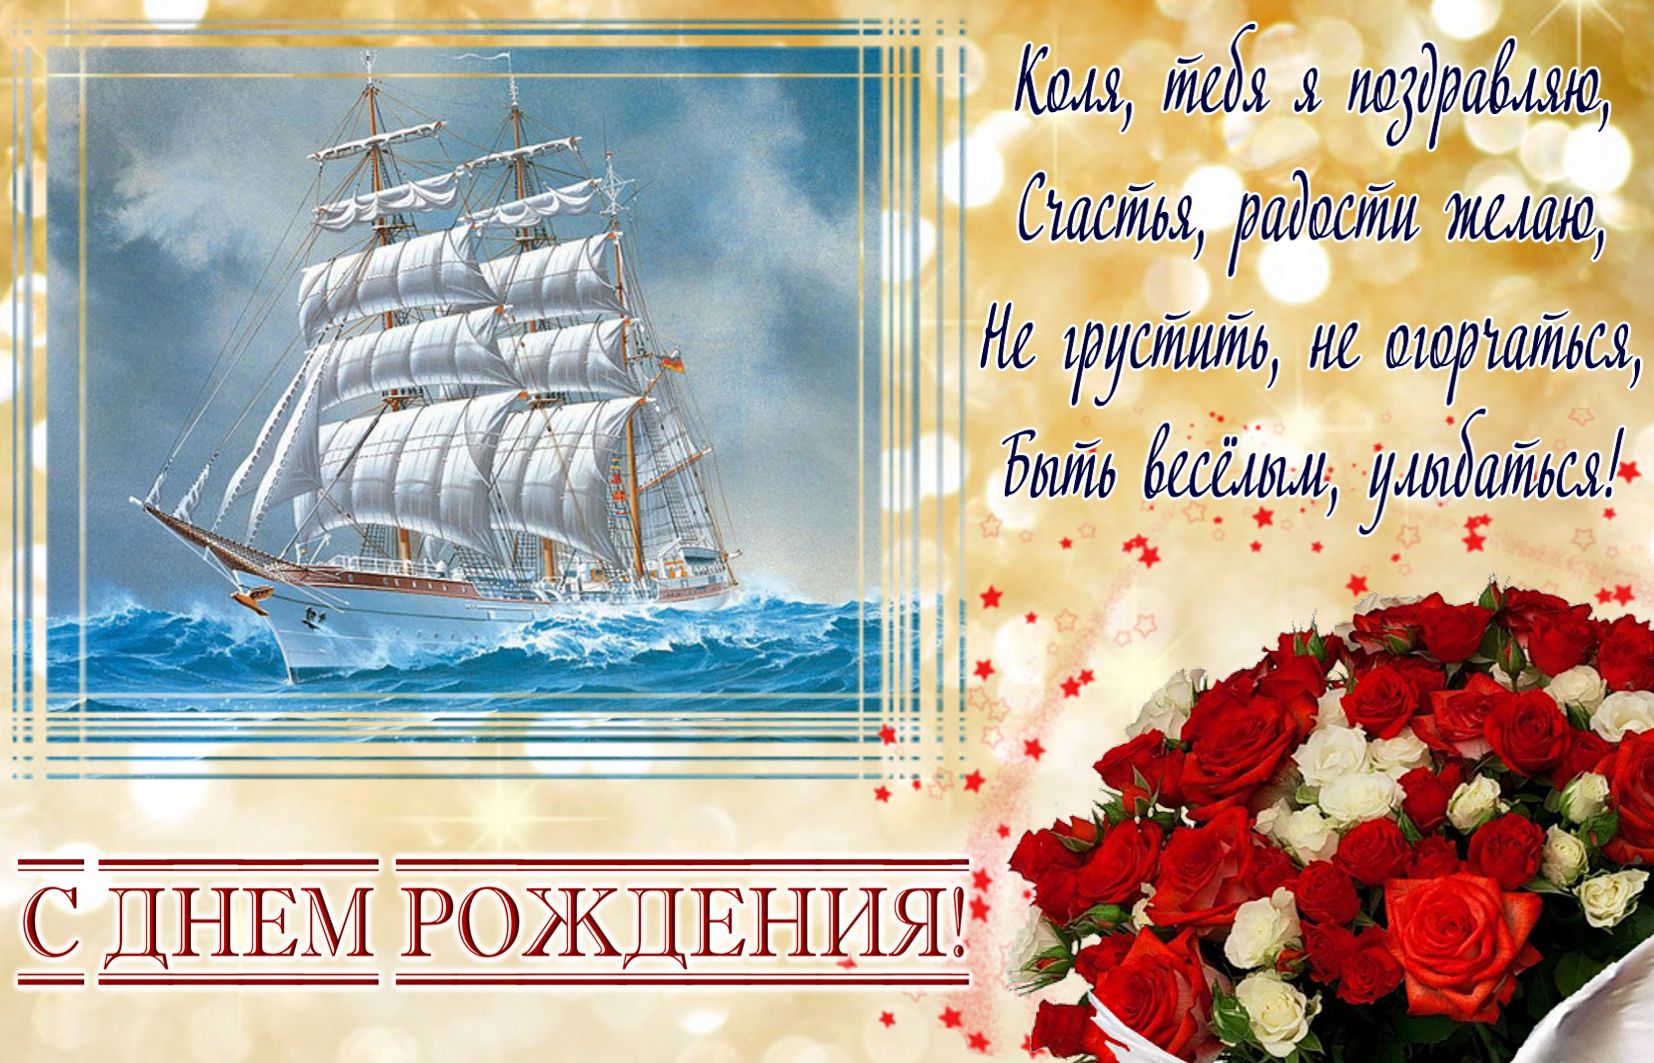 Песня Поздравление С Днем Рождения Николаев